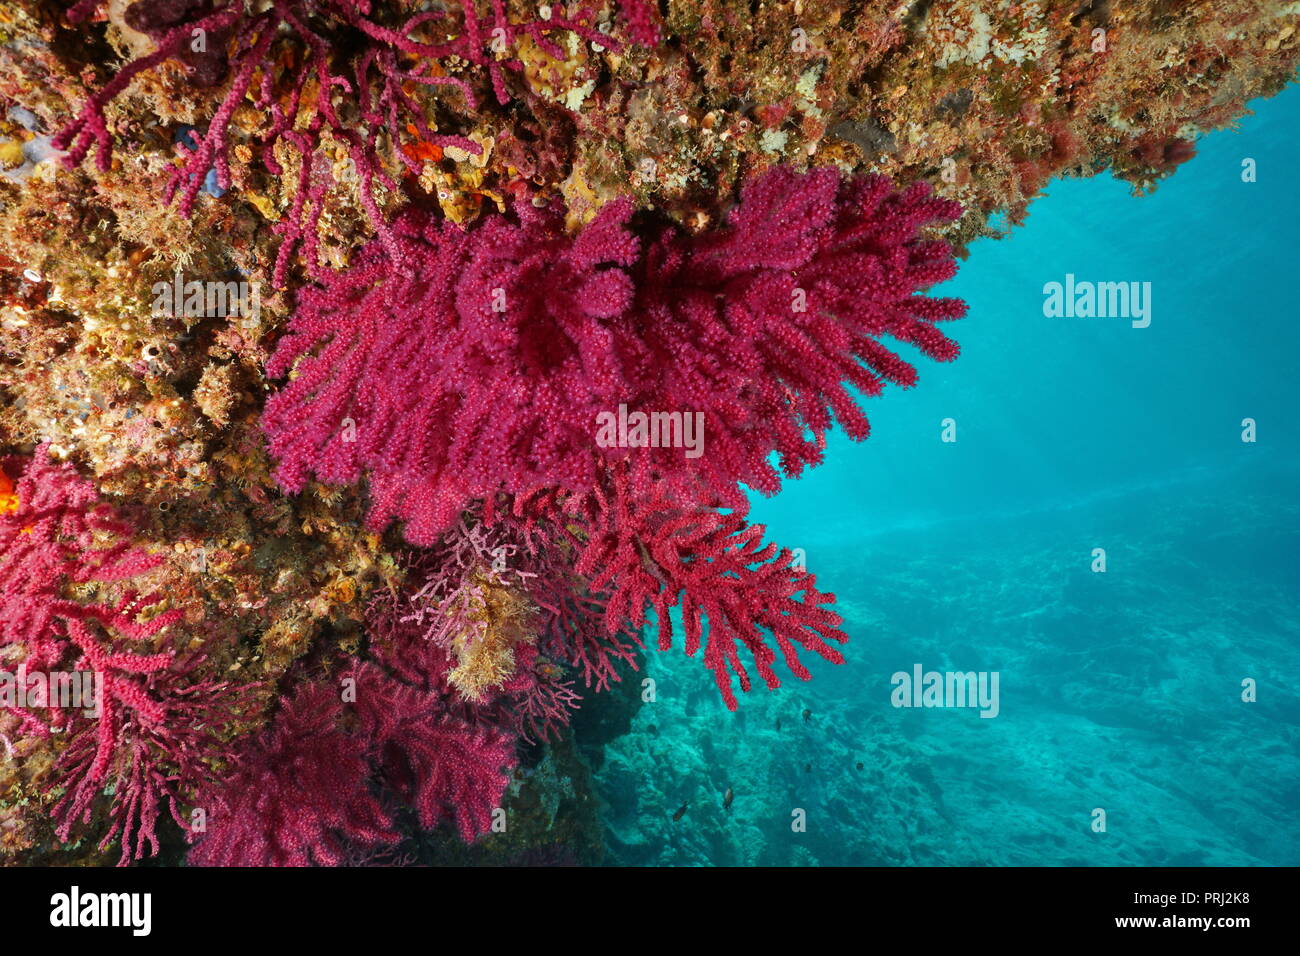 Gorgonie violescent Meer peitsche Paramuricea Clavata - Unterwasser im Mittelmeer, Cap de Creus, Costa Brava, Spanien Stockfoto